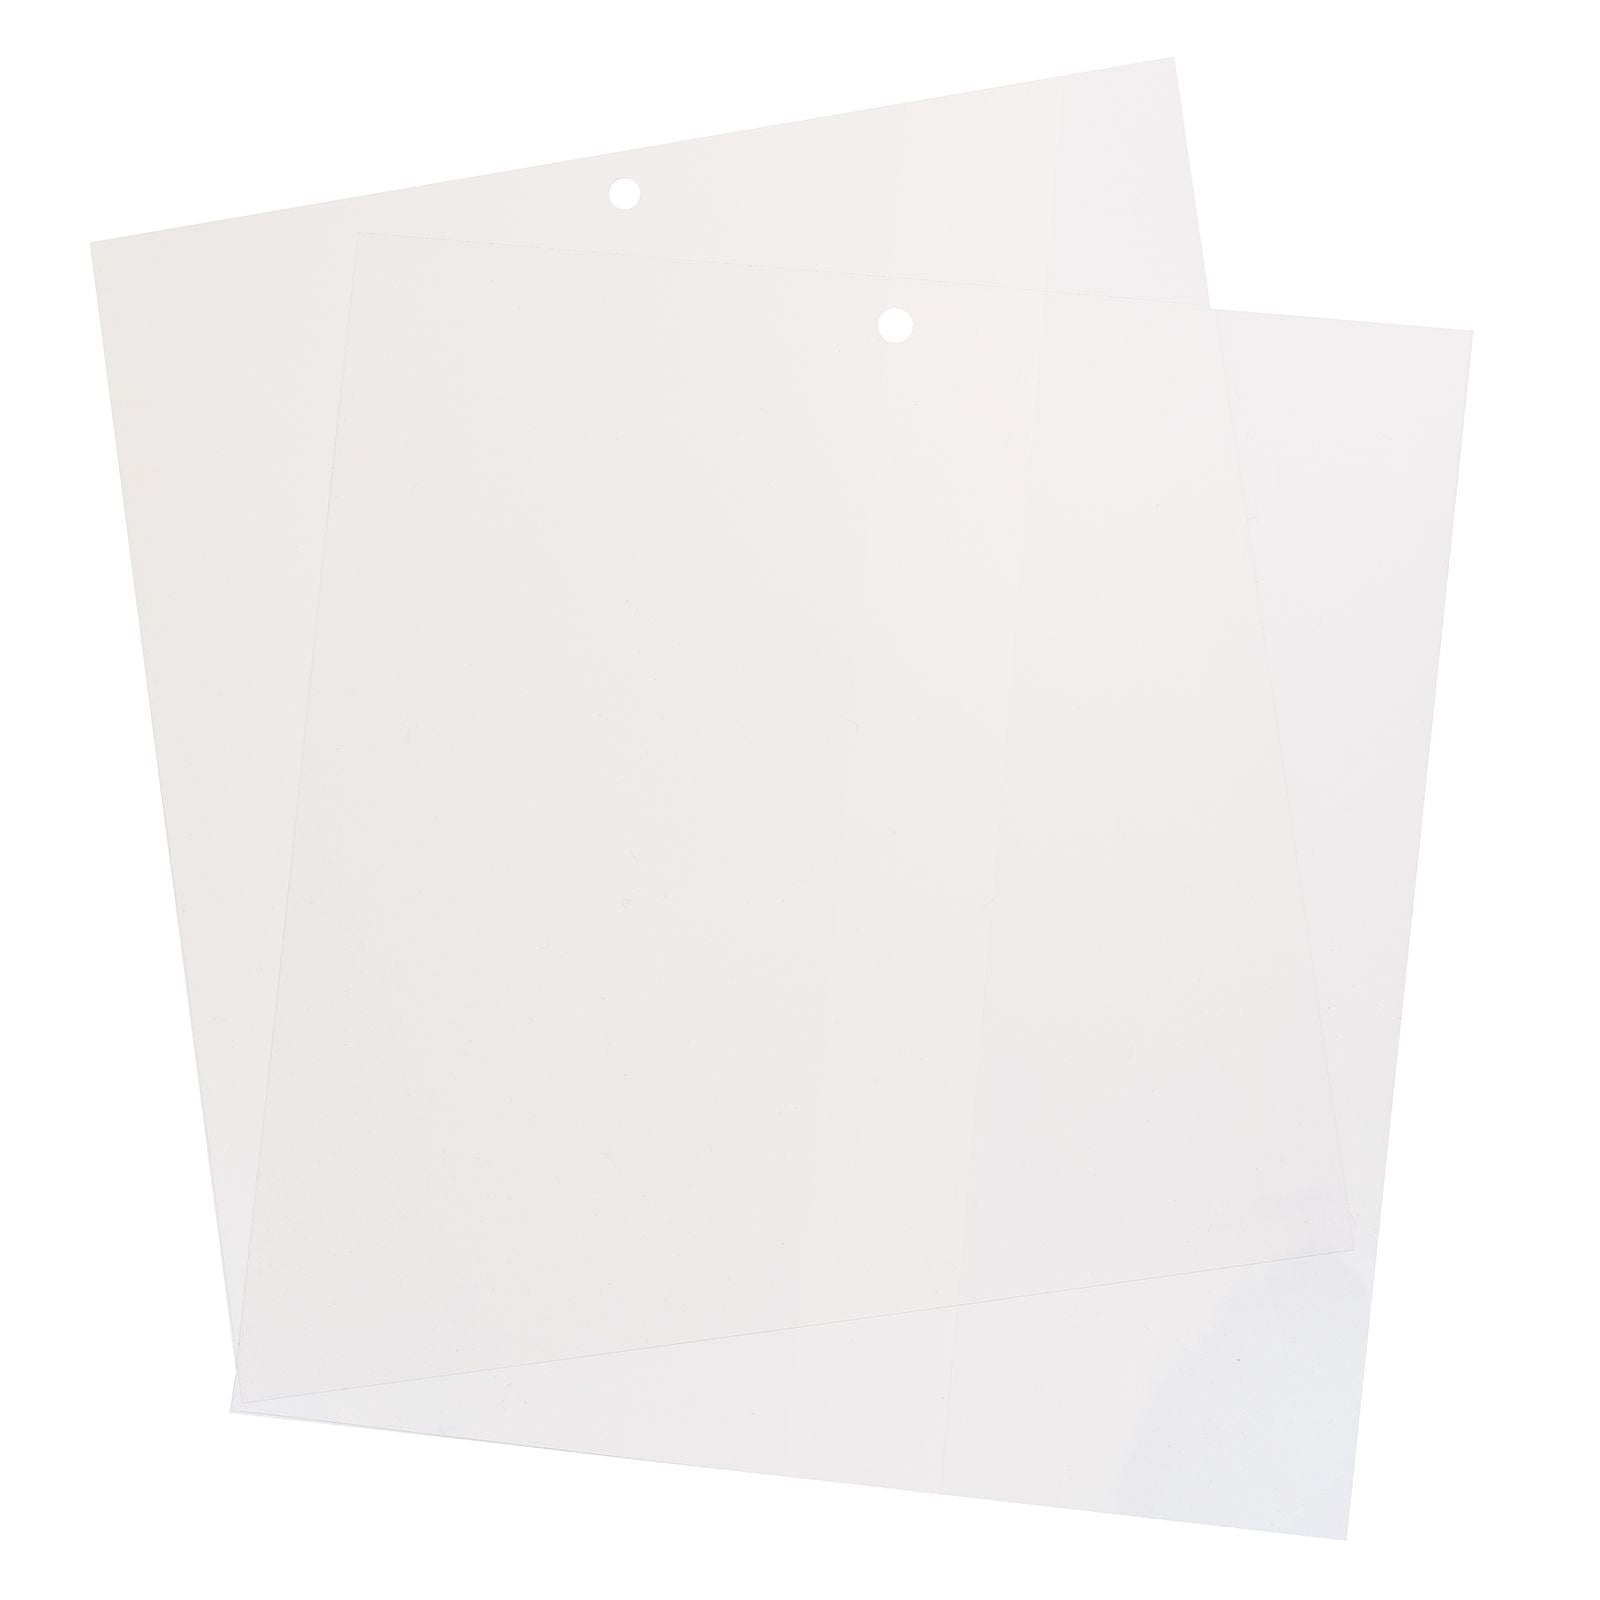 STOBOK 9 piezas de filtro de color transparente lámina de acetato  superposiciones de película de color transparente hojas de acetato para